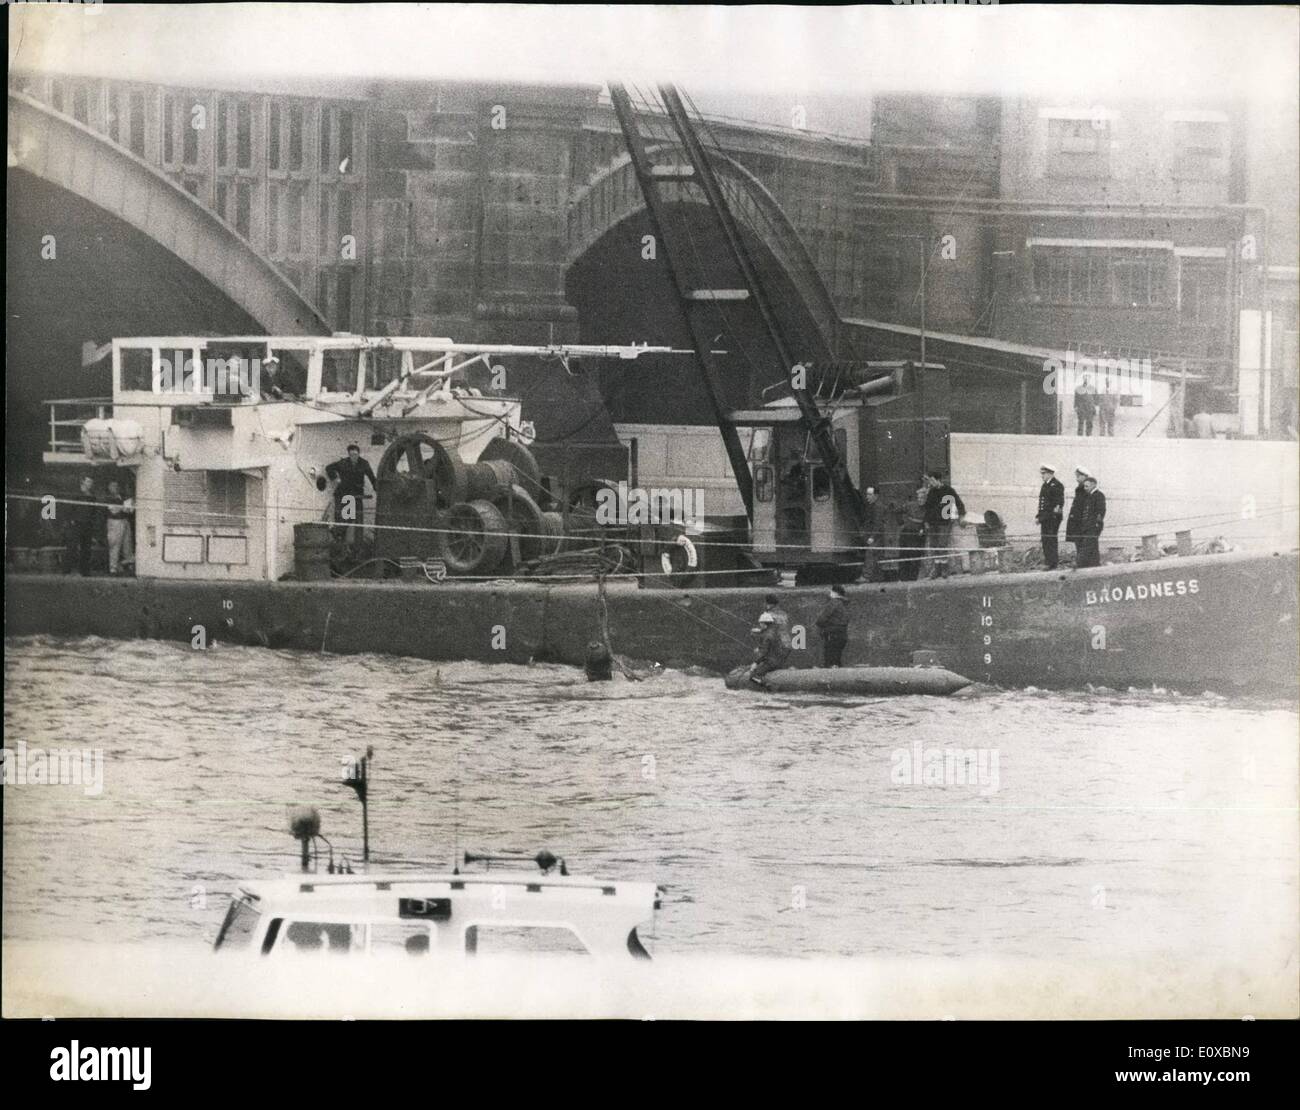 2. Februar 1966 - erholt Bombe von Thames bei Blacfriars. Die Blindgänger, die gestern auf dem Bett von den Themen der Blackfriars, entdeckt wurde war heute Ast an die Oberfläche von Experten der Royal Navy. Foto zeigt Royal Navy Taucher gesehen in einer Jolle zu beobachten, wie die Bombe von Erane, aus der Themse angeleitet wird, nachdem einer der Taucher eine Linie an der Bombe befestigt hatte, später aufgegriffen Fluss zur Verfügung. Stockfoto